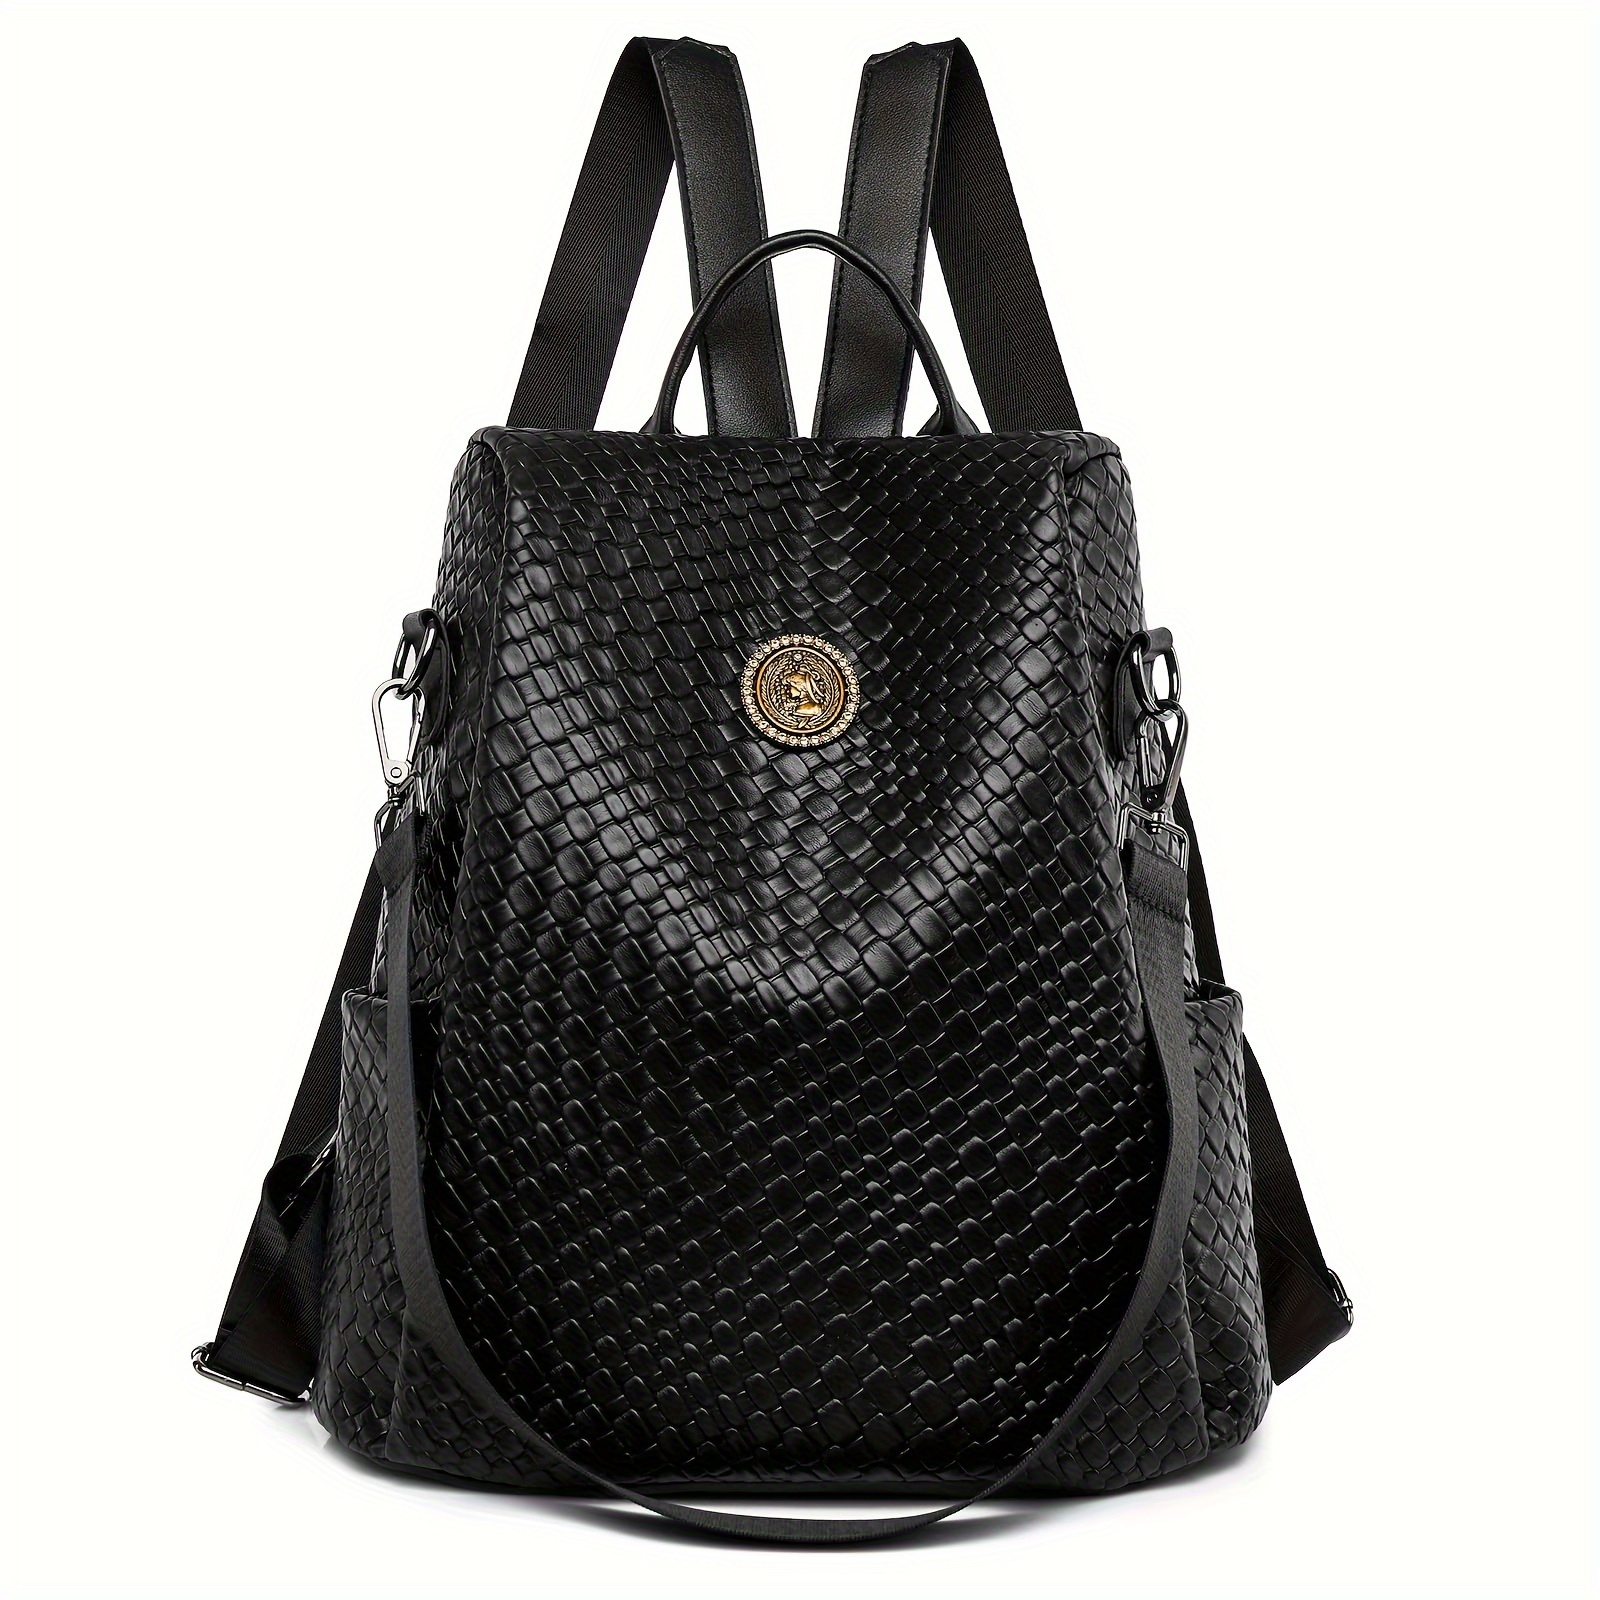 

Fashion Backpack Purse For Women, Large Vegan Leather Anti-theft Travel Bag, Hiking Backpack Shoulder Bag Handbag